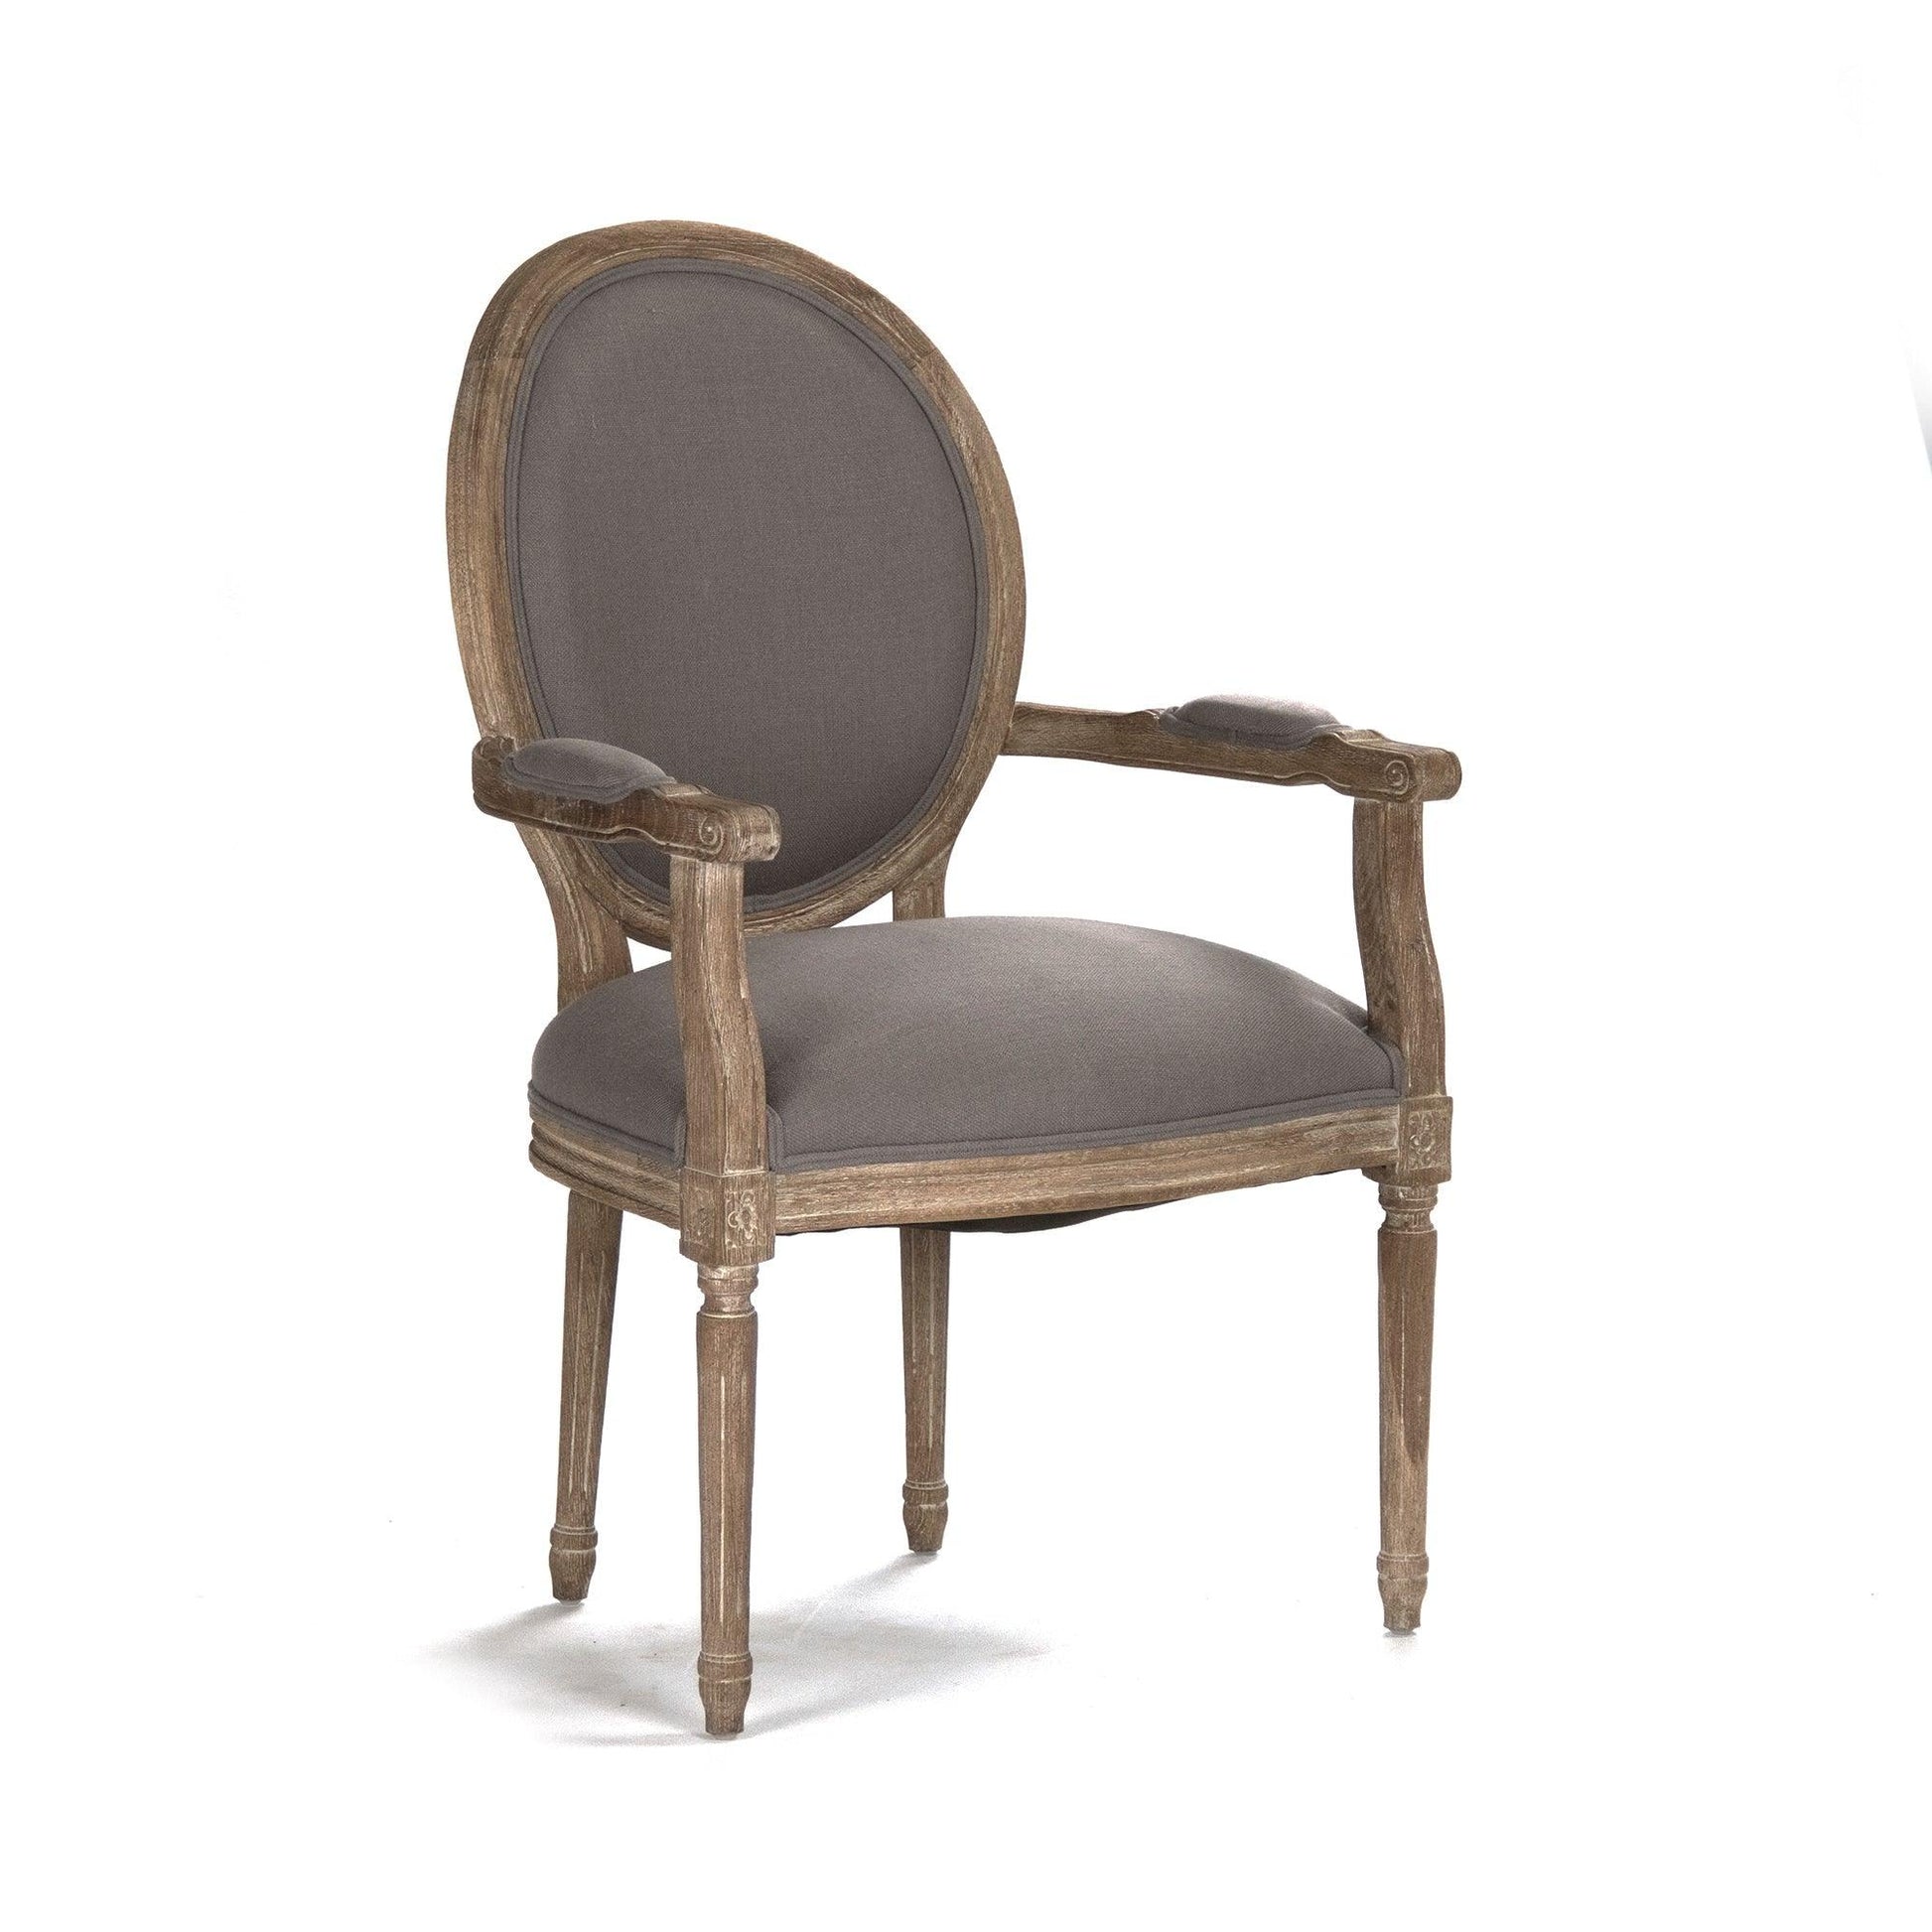 Medallion Arm Chair B009 E272 A048 FredCo